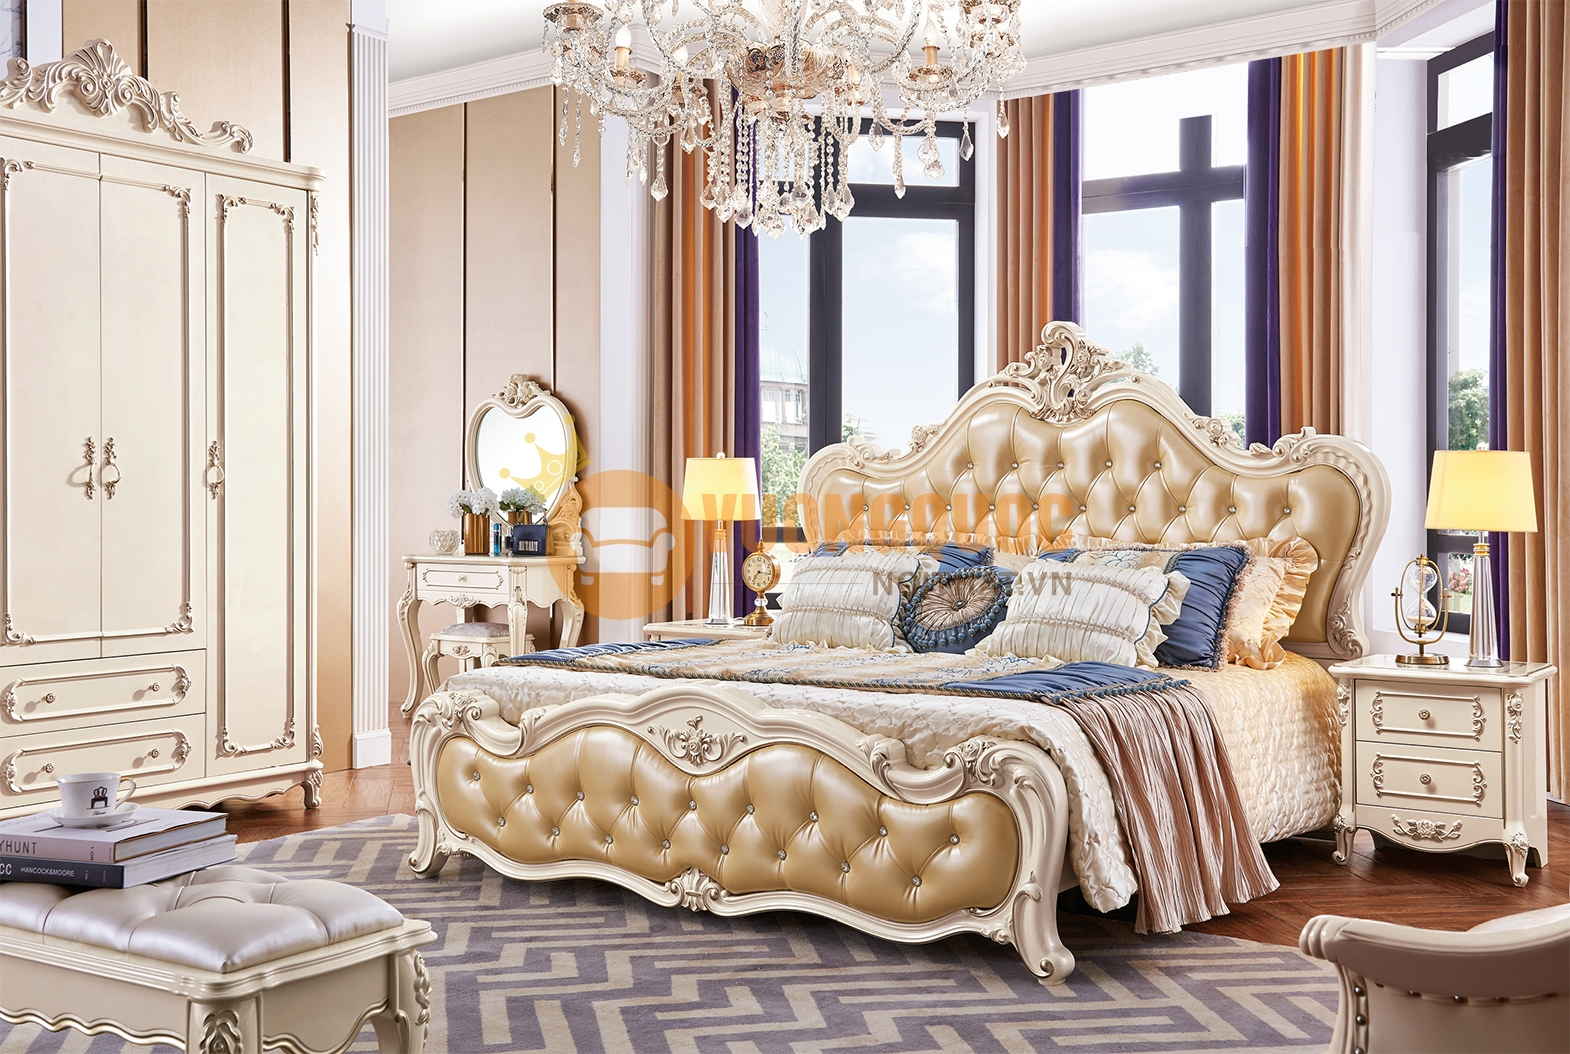 Mẫu giường ngủ gỗ đẹp phong cách tân cổ điển